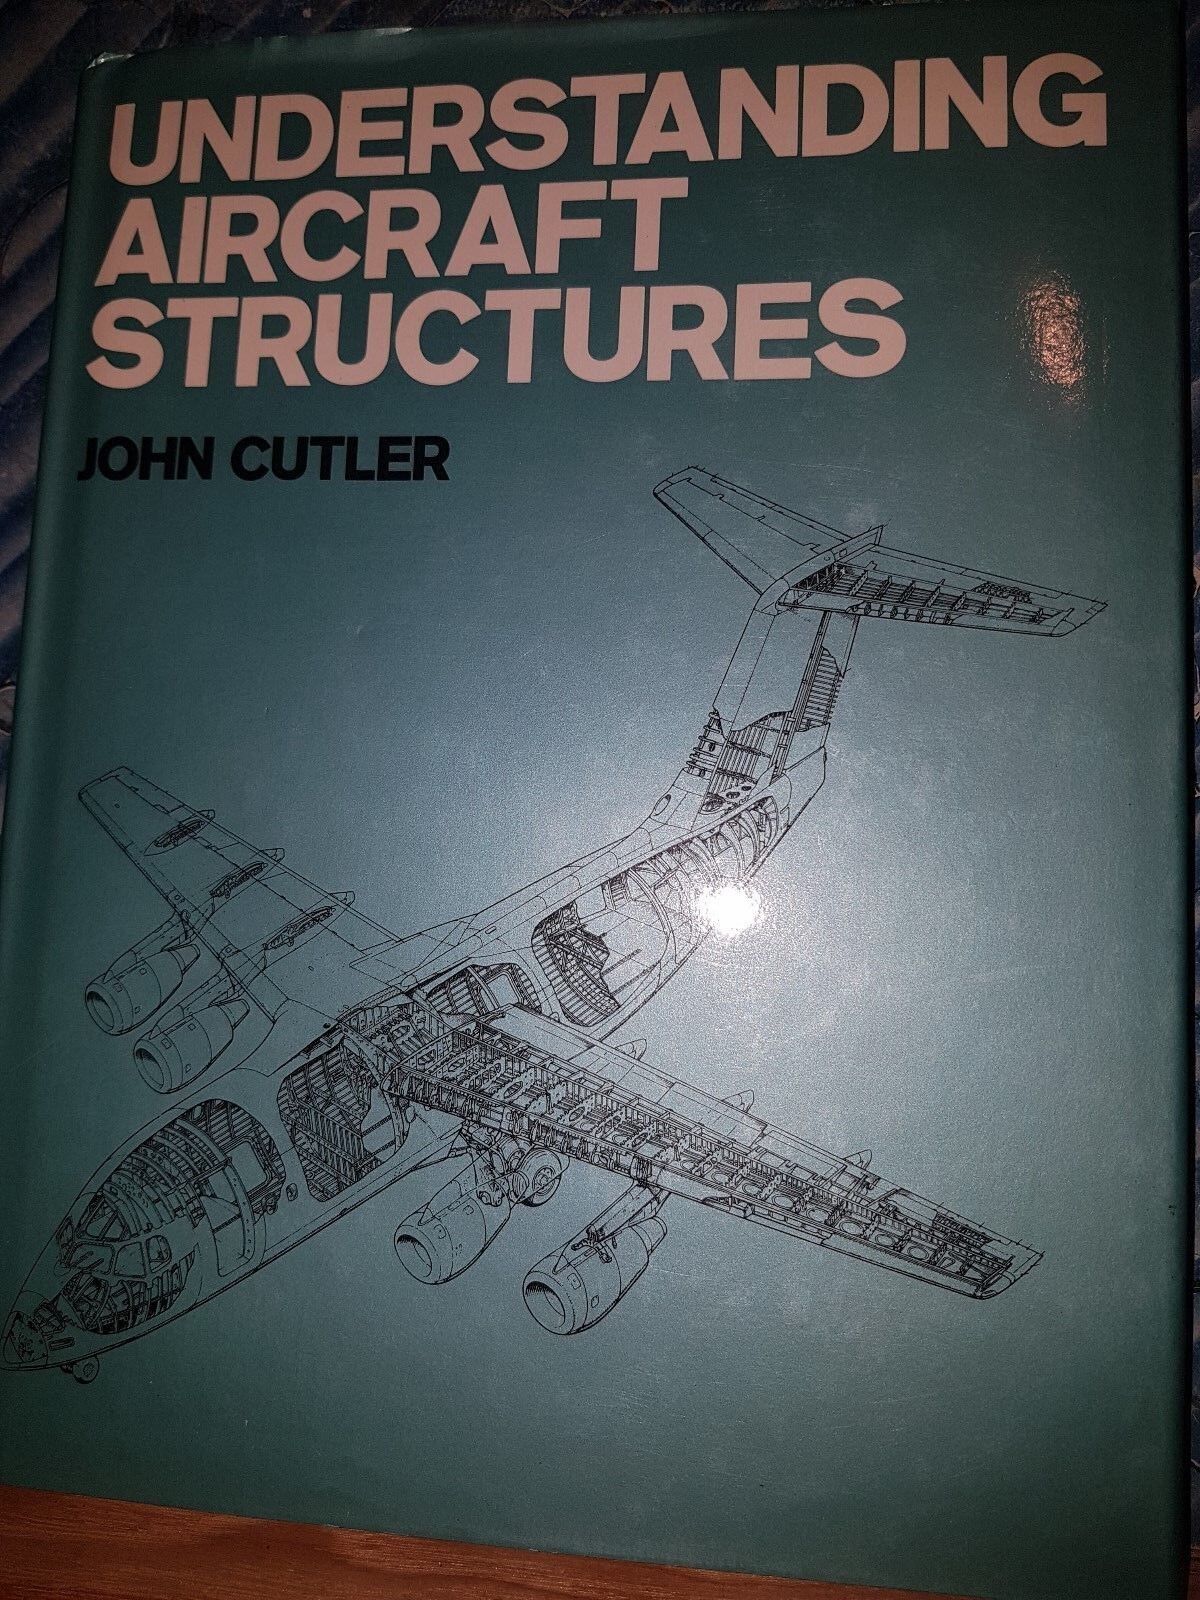 Understanding Aircraft Structures John Cutler HB/DJ 1981 Very Good Condition